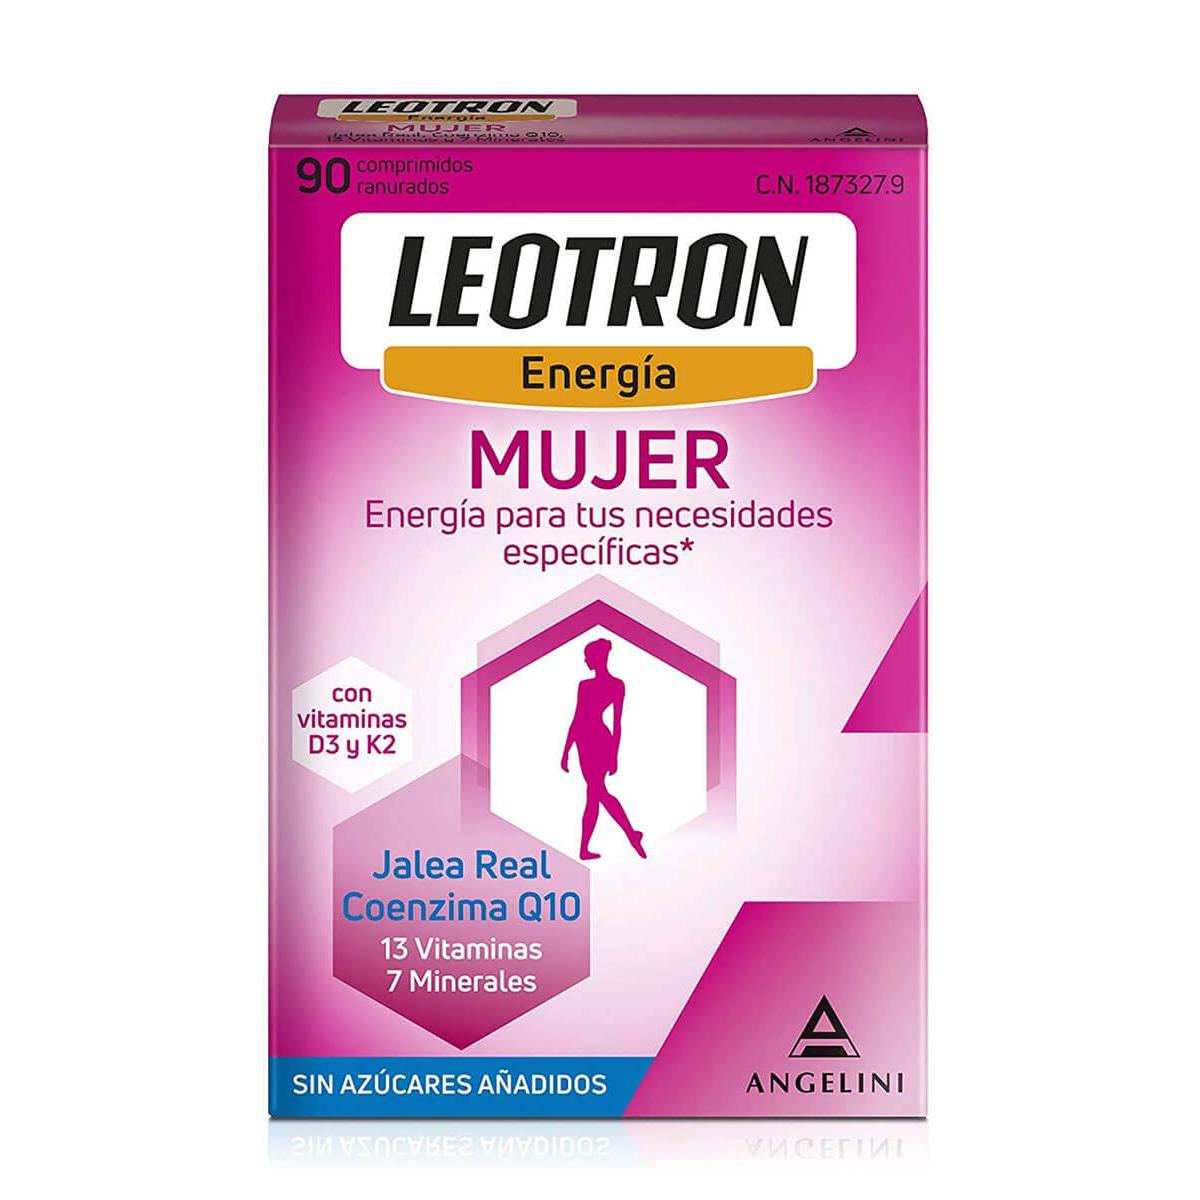 Leotron - Leotron energía mujer 90 comprimidos